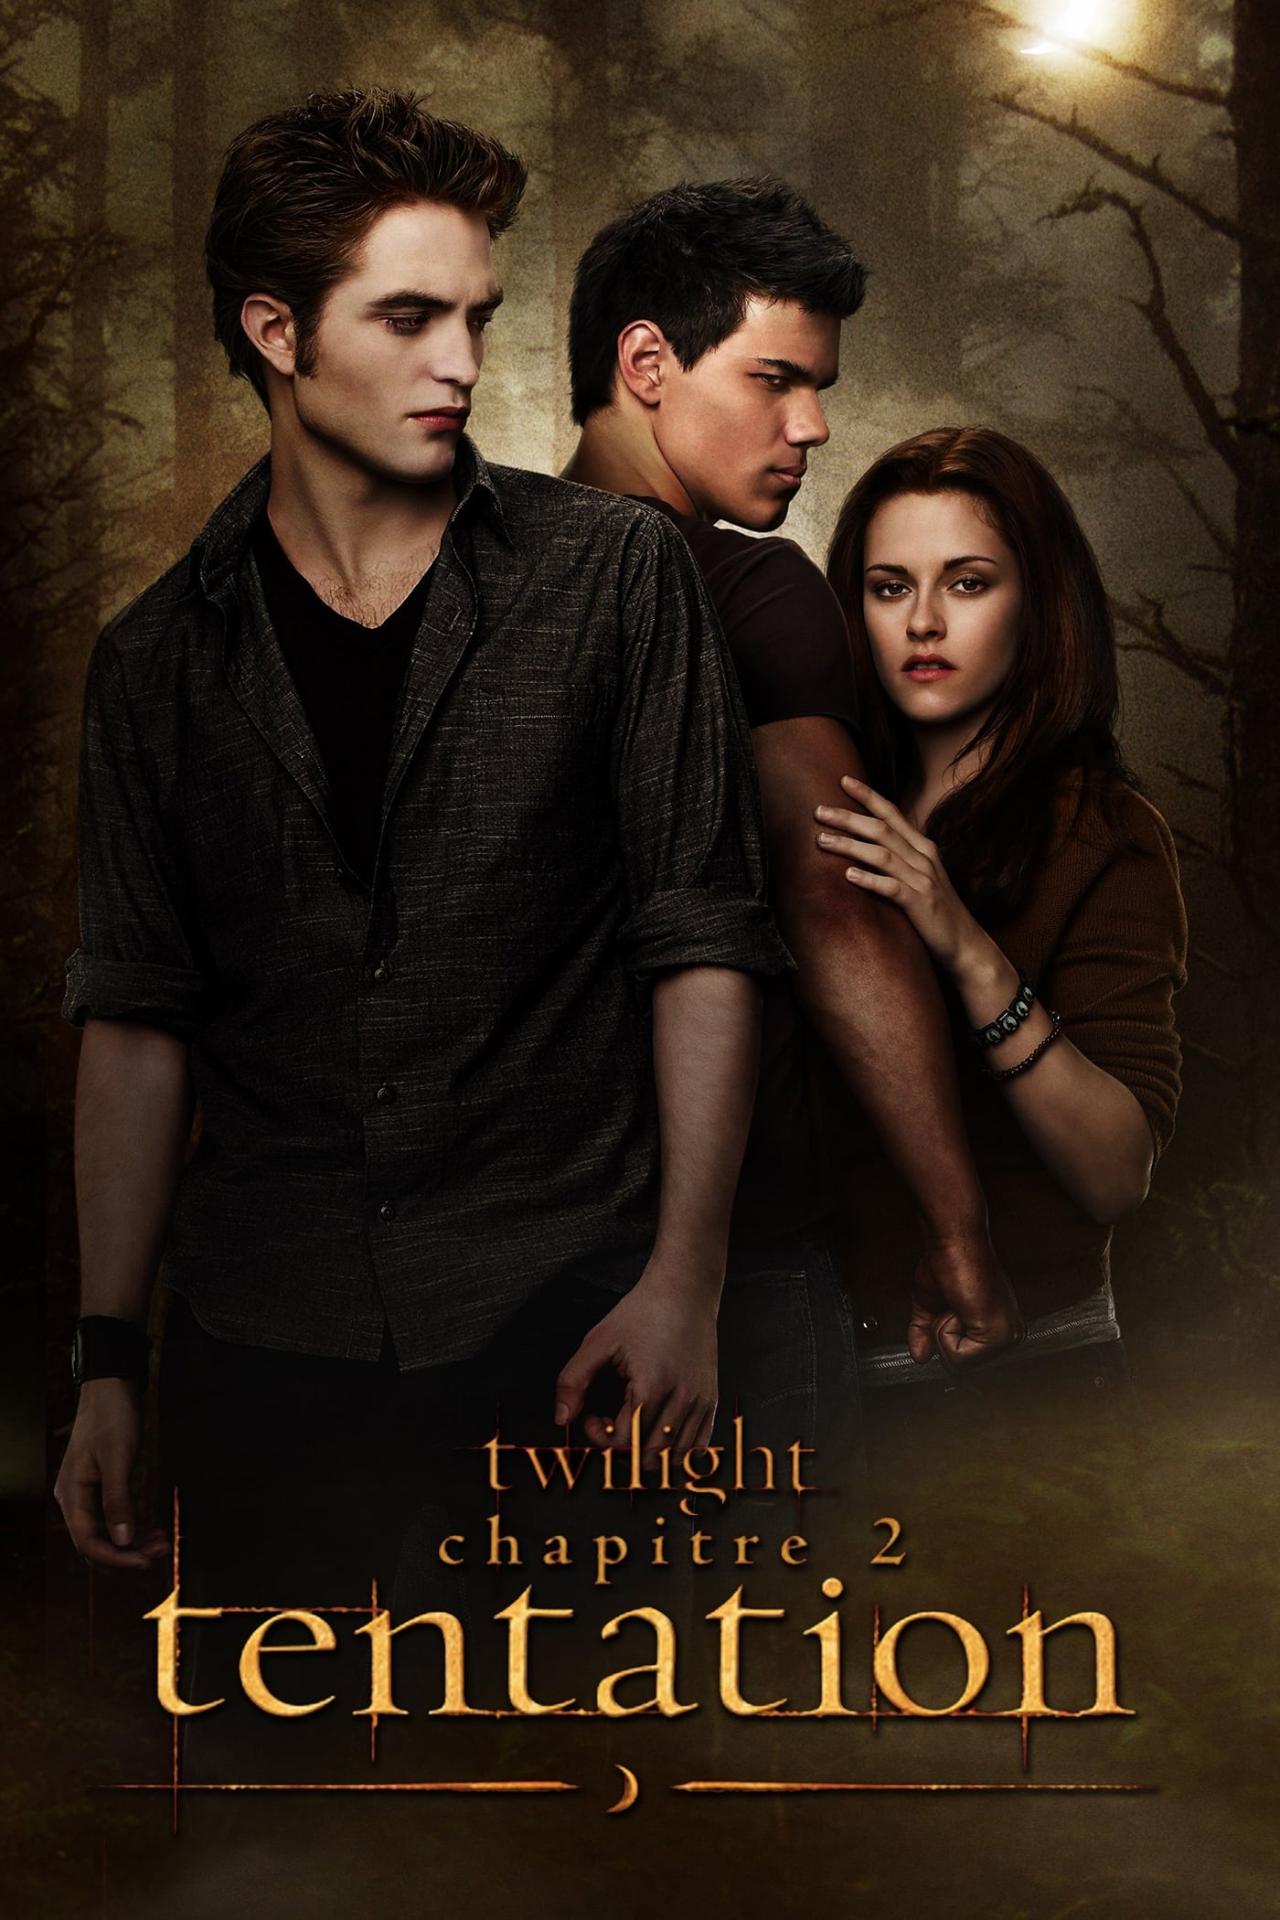 Twilight, chapitre 2 : Tentation est-il disponible sur Netflix ou autre ?